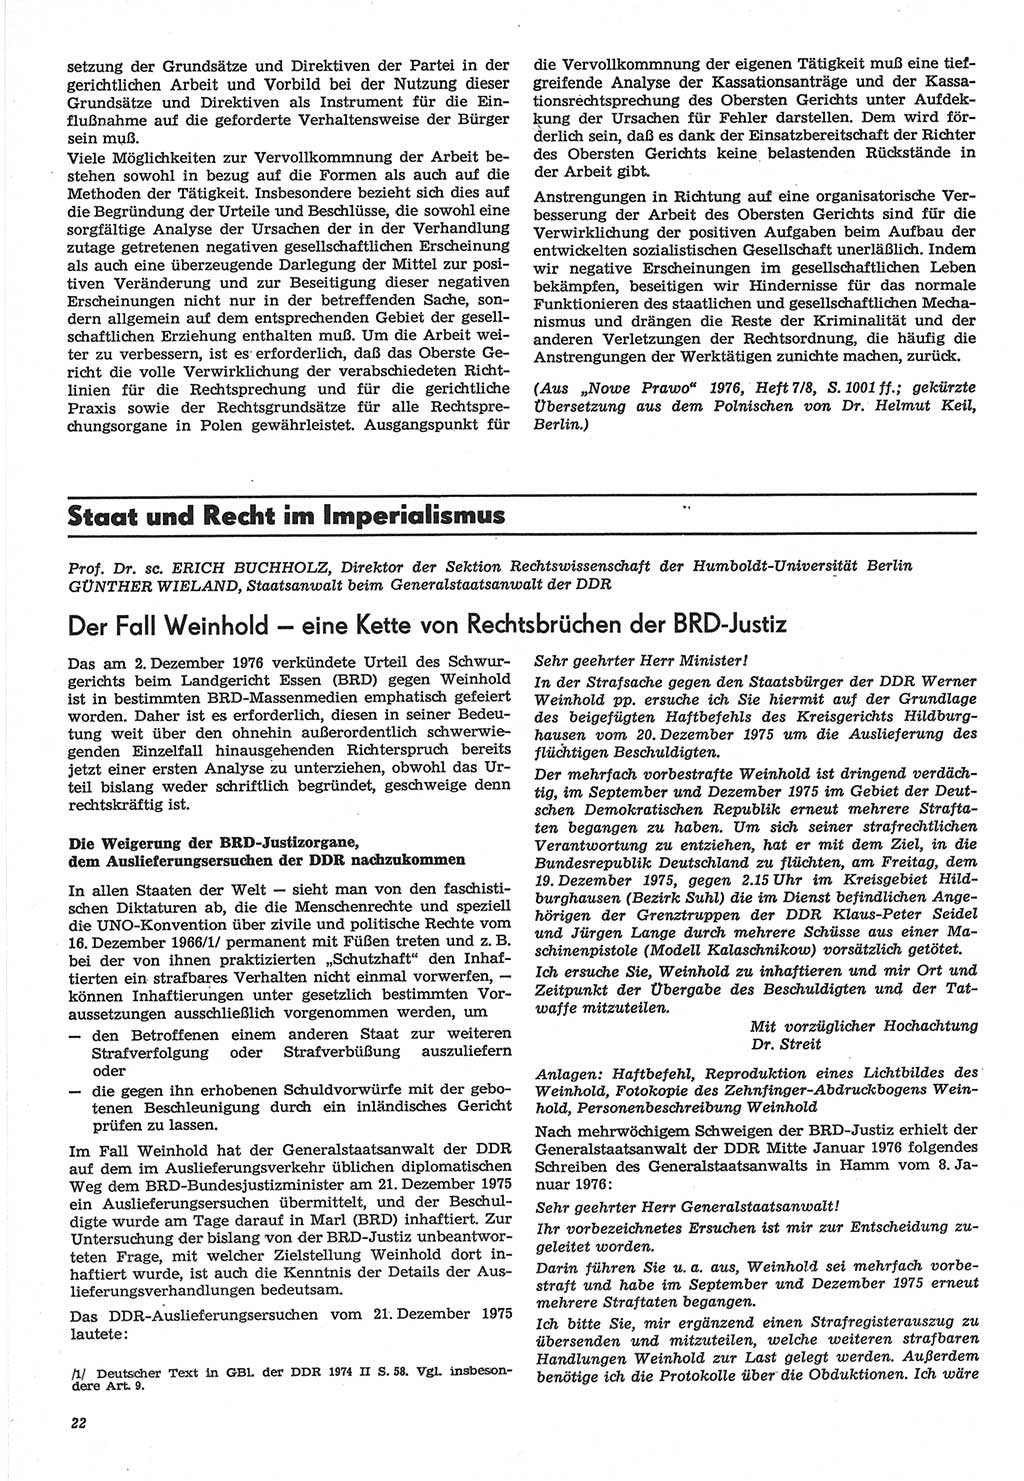 Neue Justiz (NJ), Zeitschrift für Recht und Rechtswissenschaft-Zeitschrift, sozialistisches Recht und Gesetzlichkeit, 31. Jahrgang 1977, Seite 22 (NJ DDR 1977, S. 22)